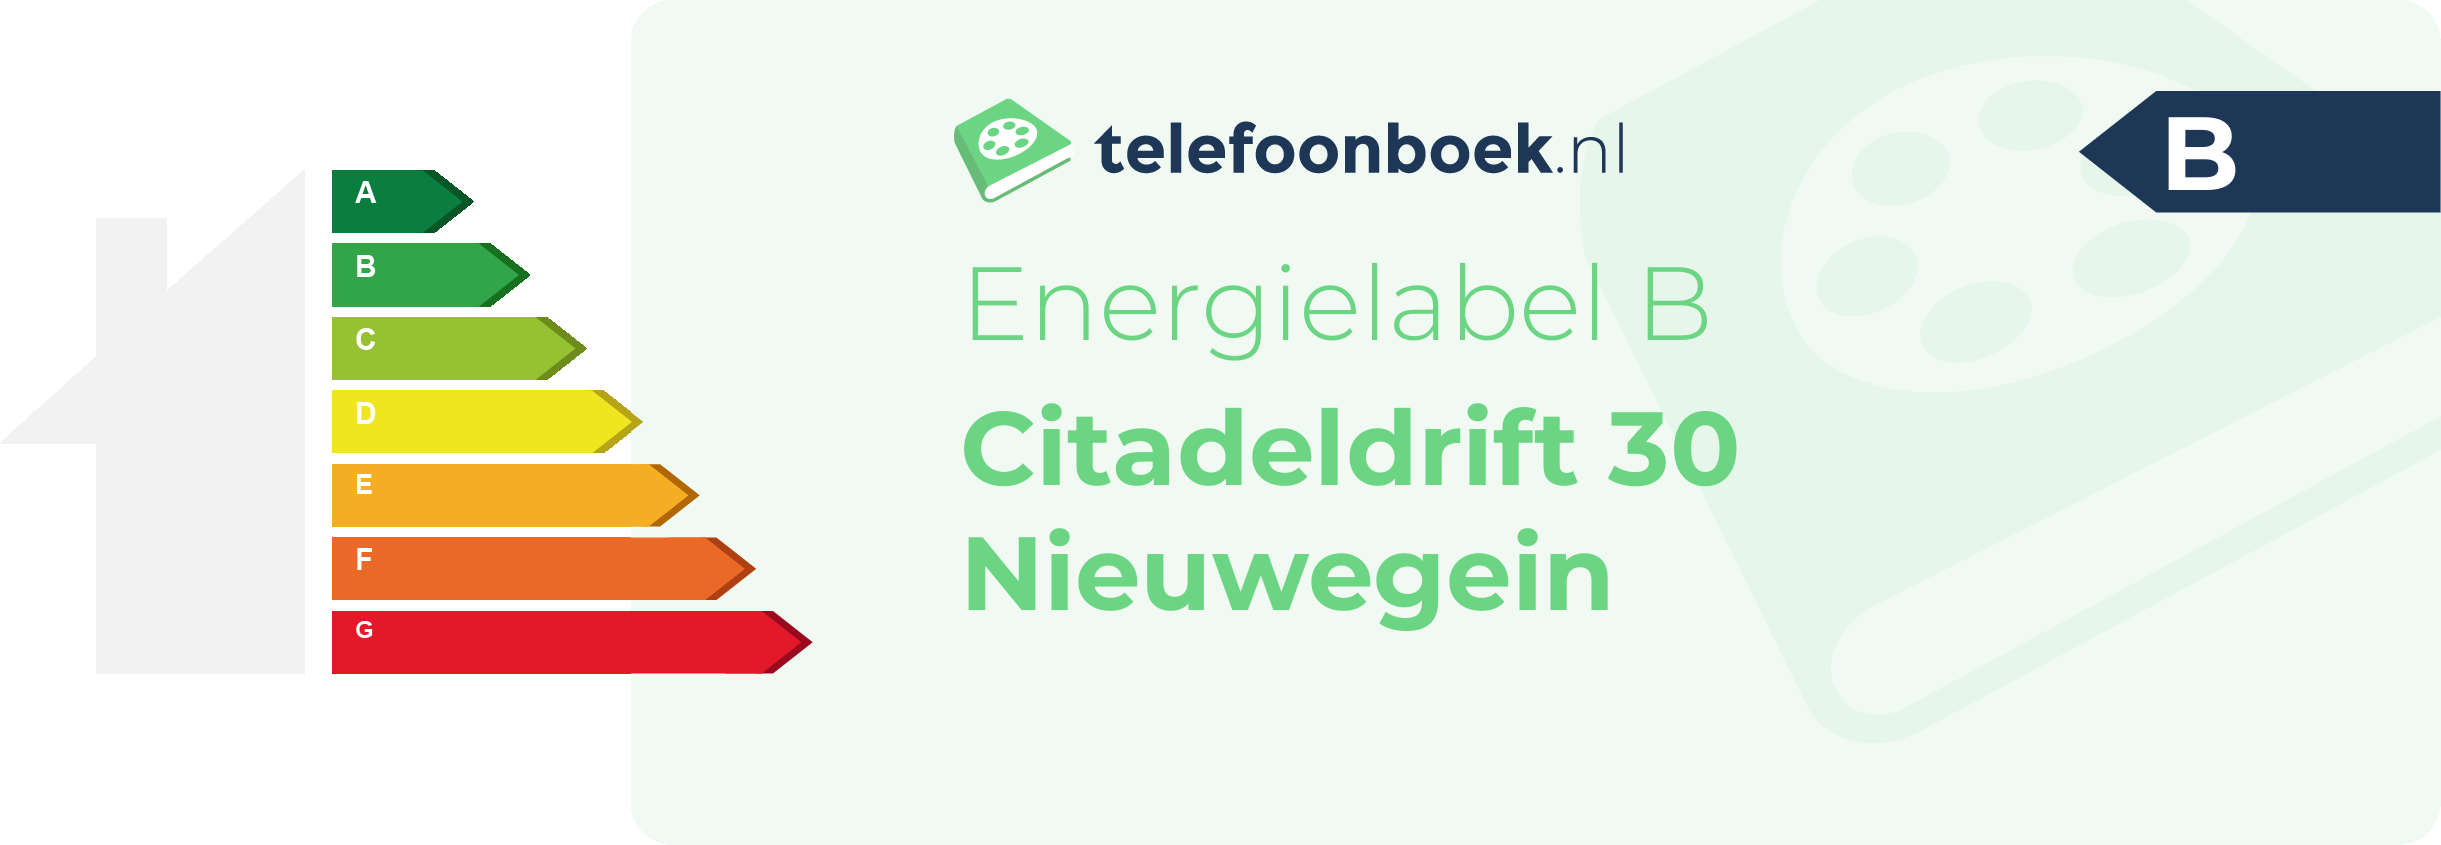 Energielabel Citadeldrift 30 Nieuwegein